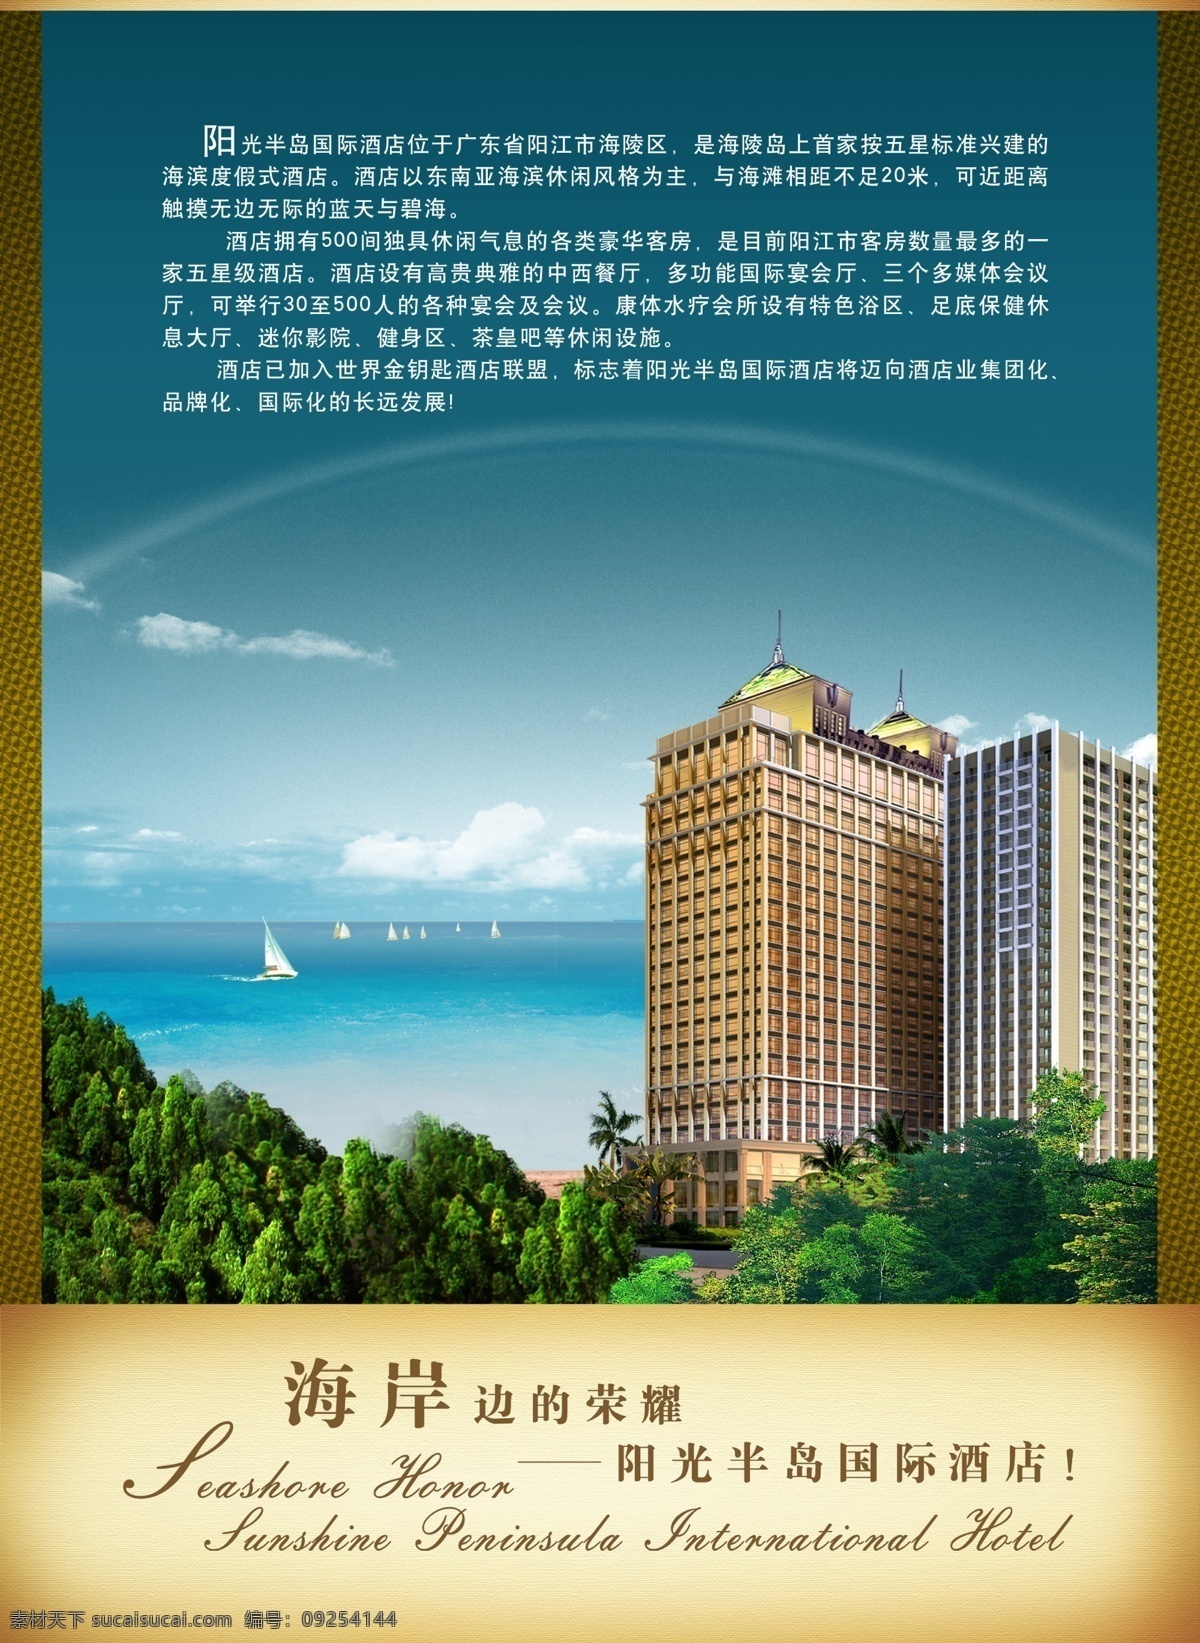 海滨 酒店 宣传海报 psd素材 大海 海滨酒店 宣传单 彩页 dm